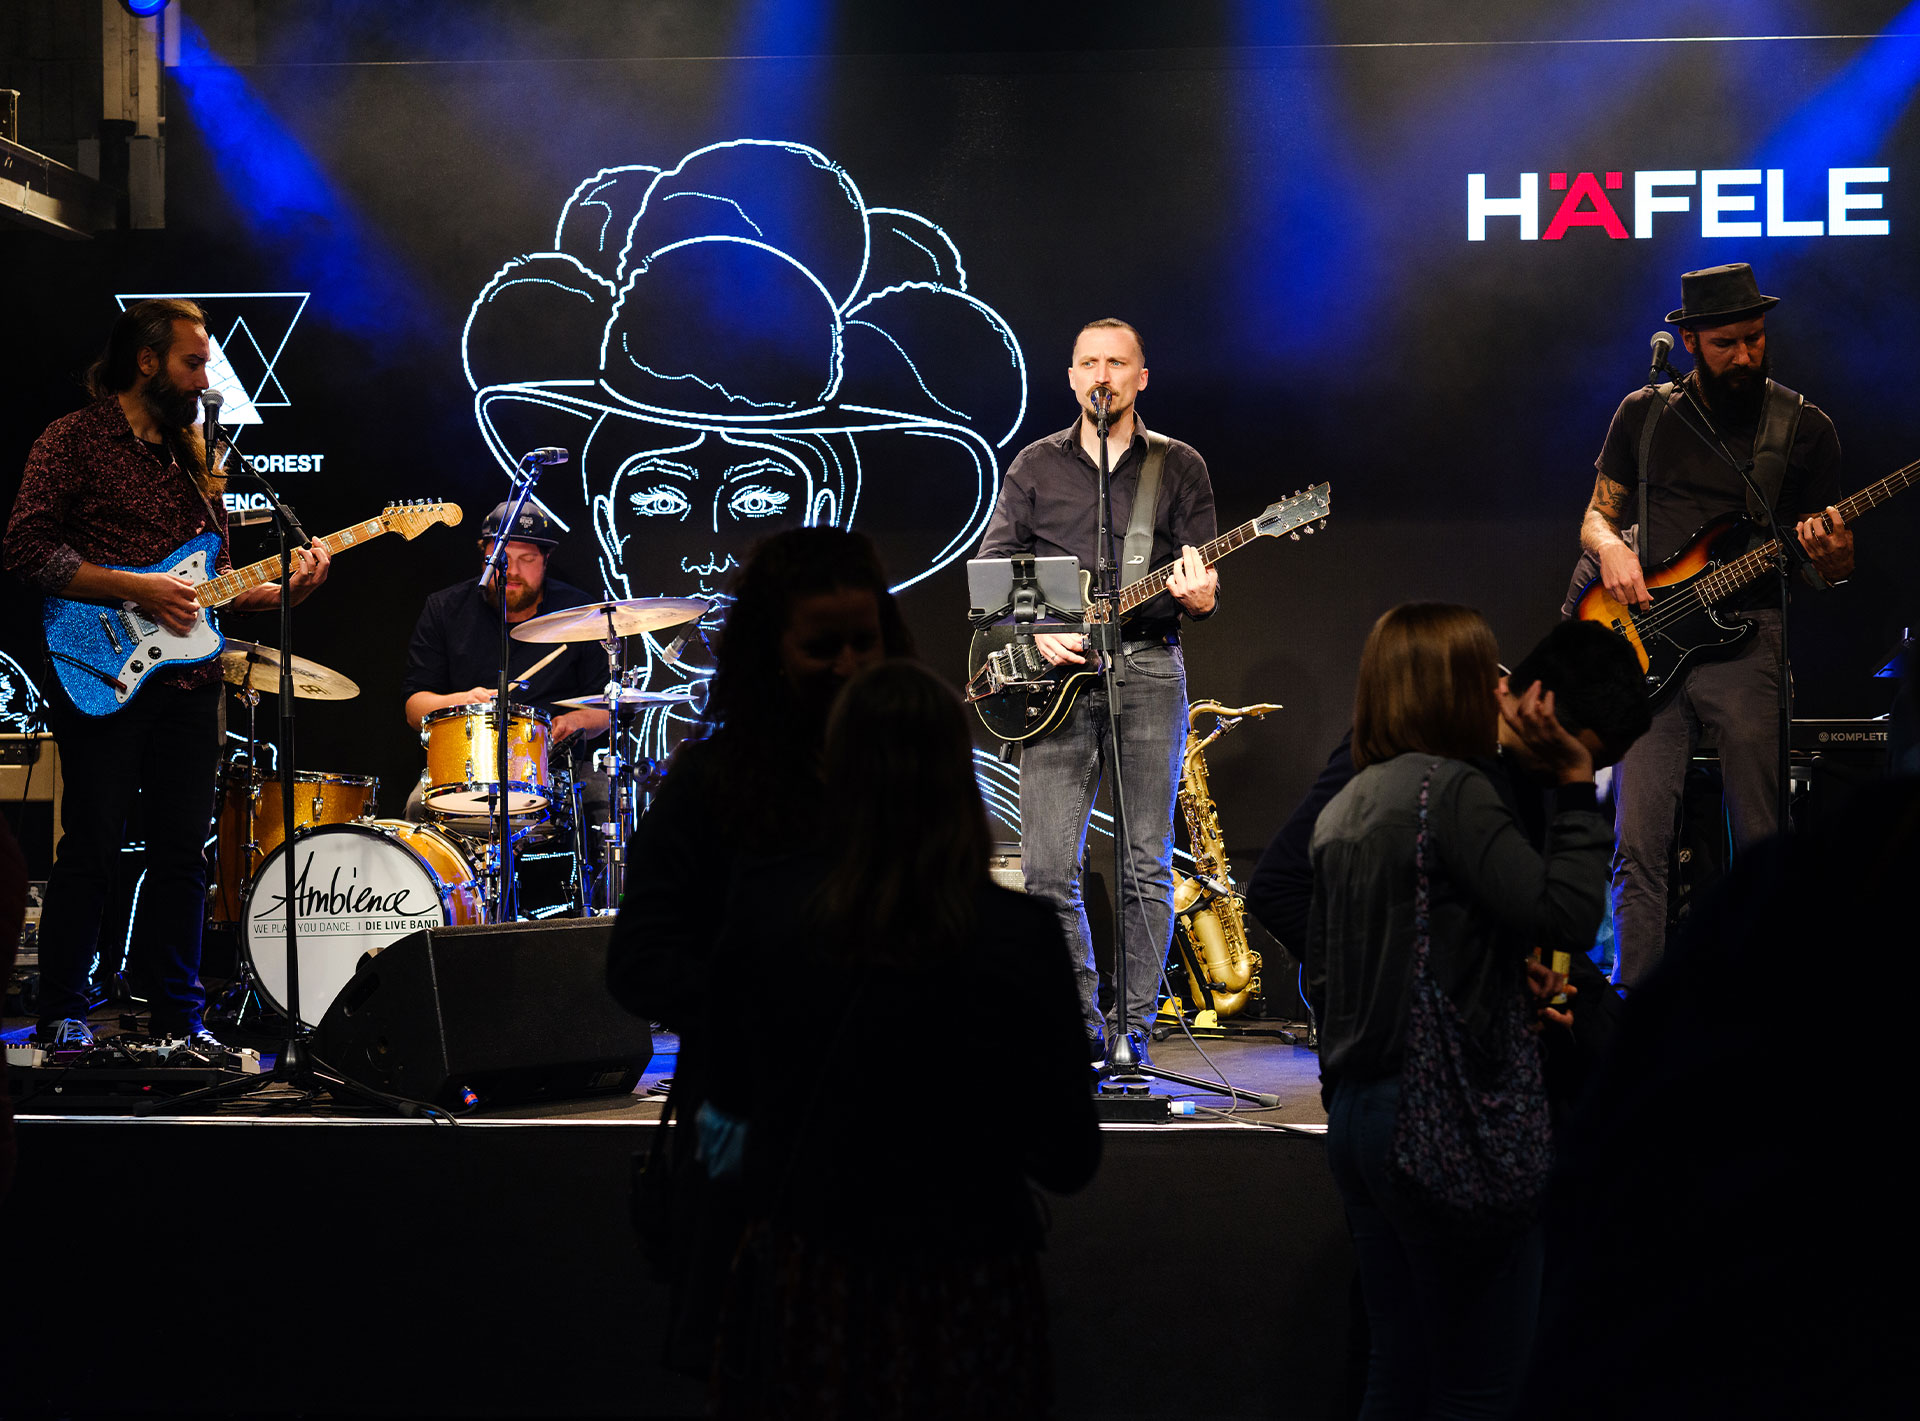 Live-Band bei einem Event mit Bühnenbeleuchtung und LED-Hintergründen, links das Logo und der Name HÄFELE.